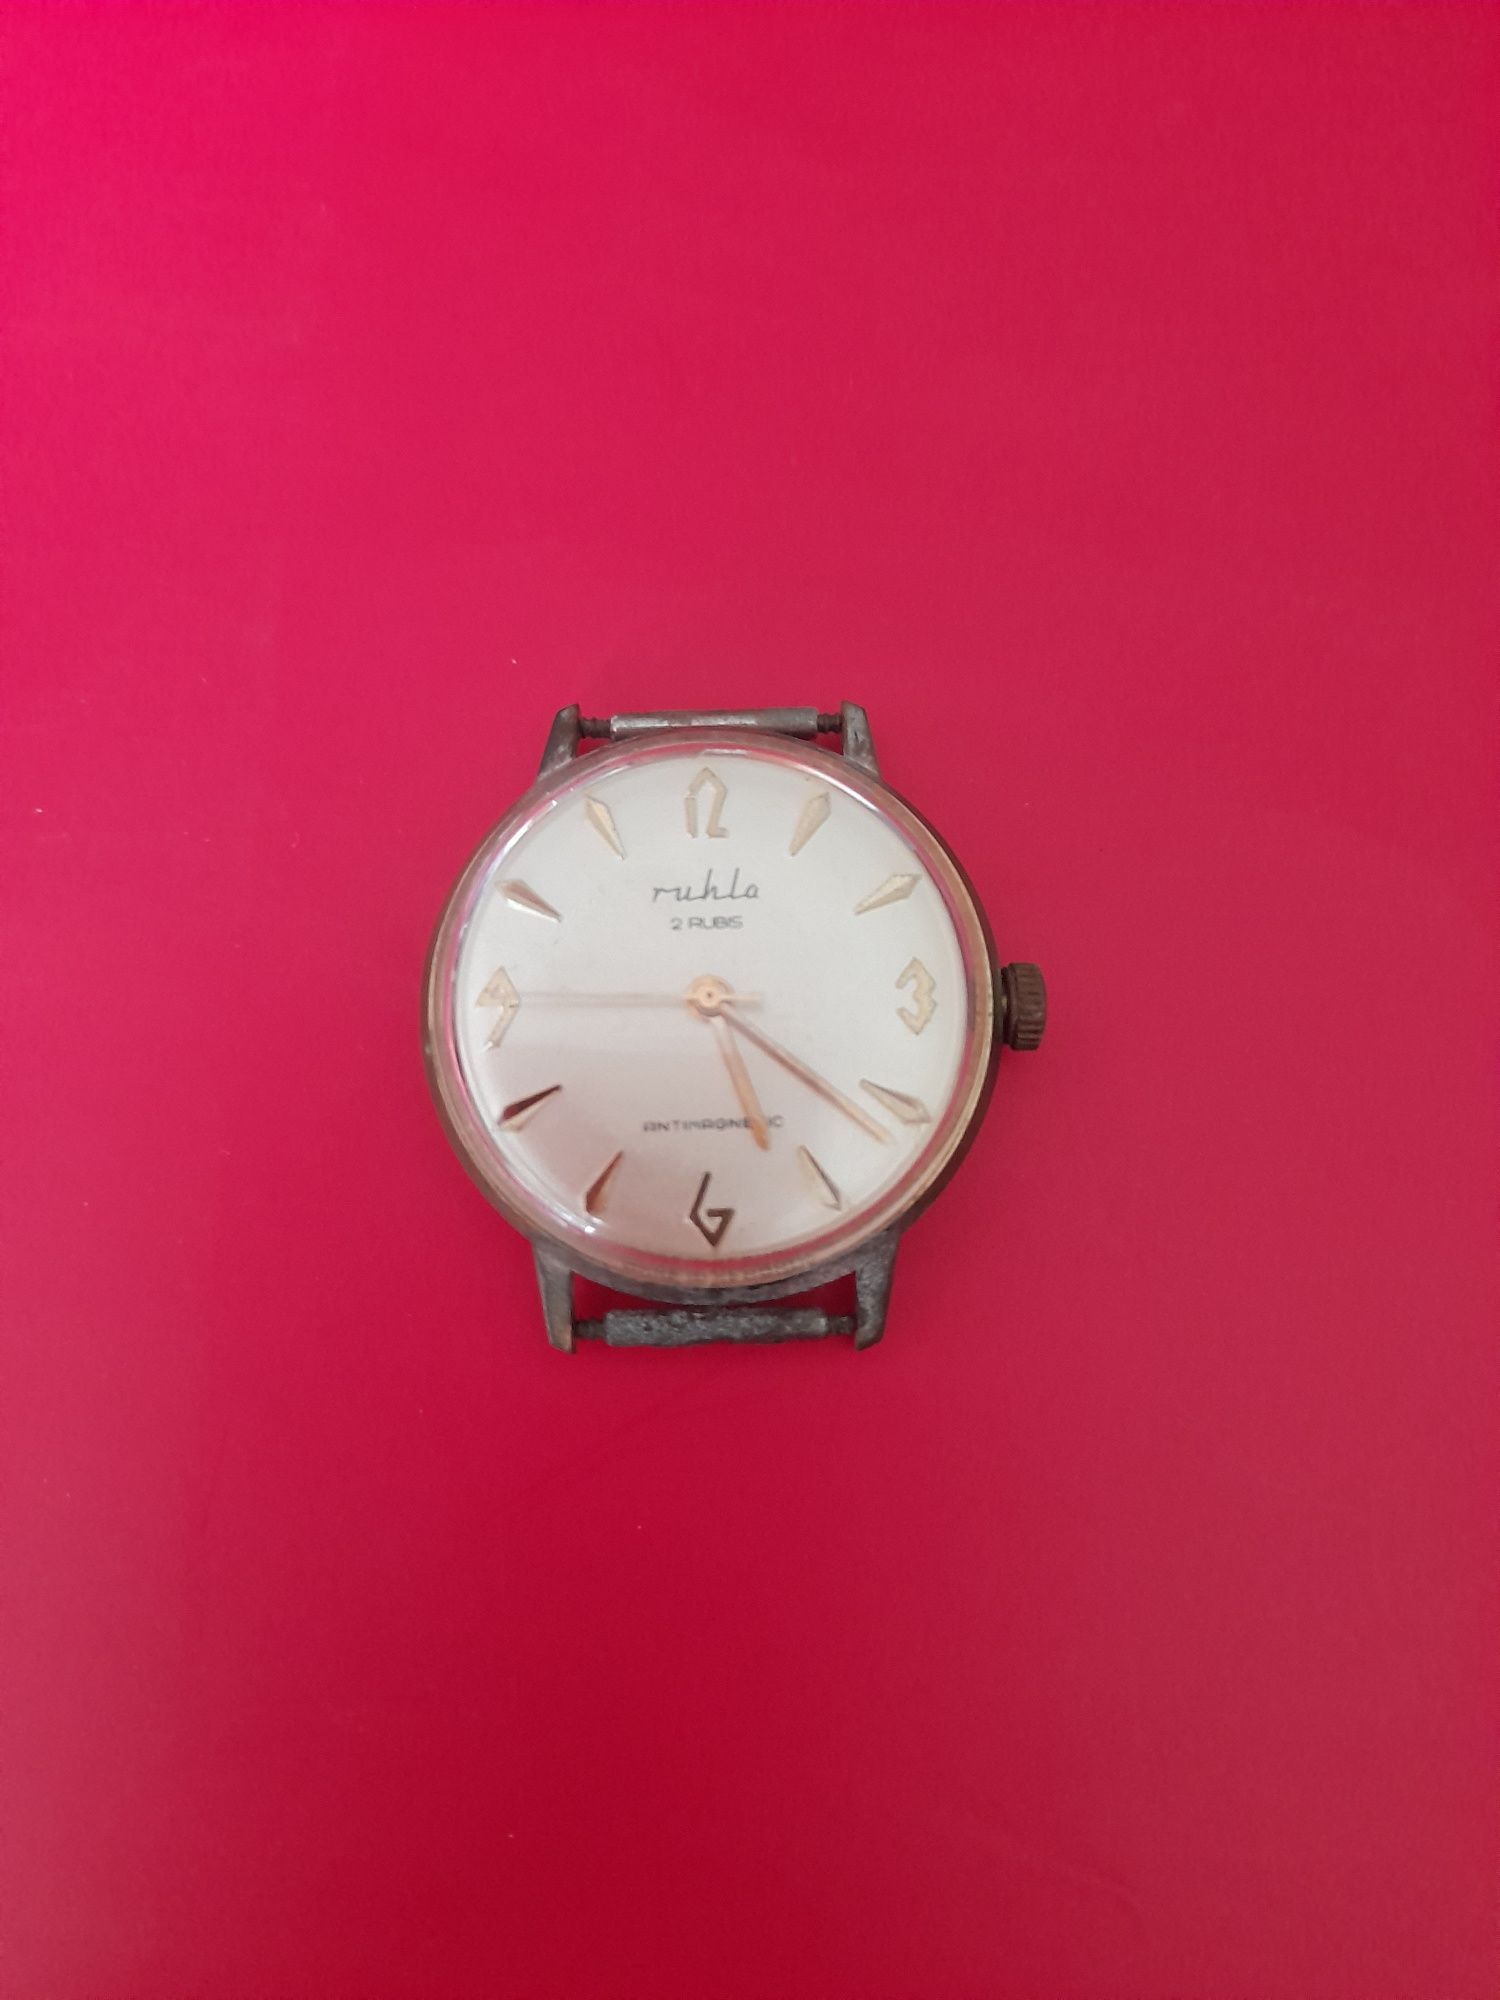 Ръчен часовник Ruhla, произведен в ГДР Източна Германия